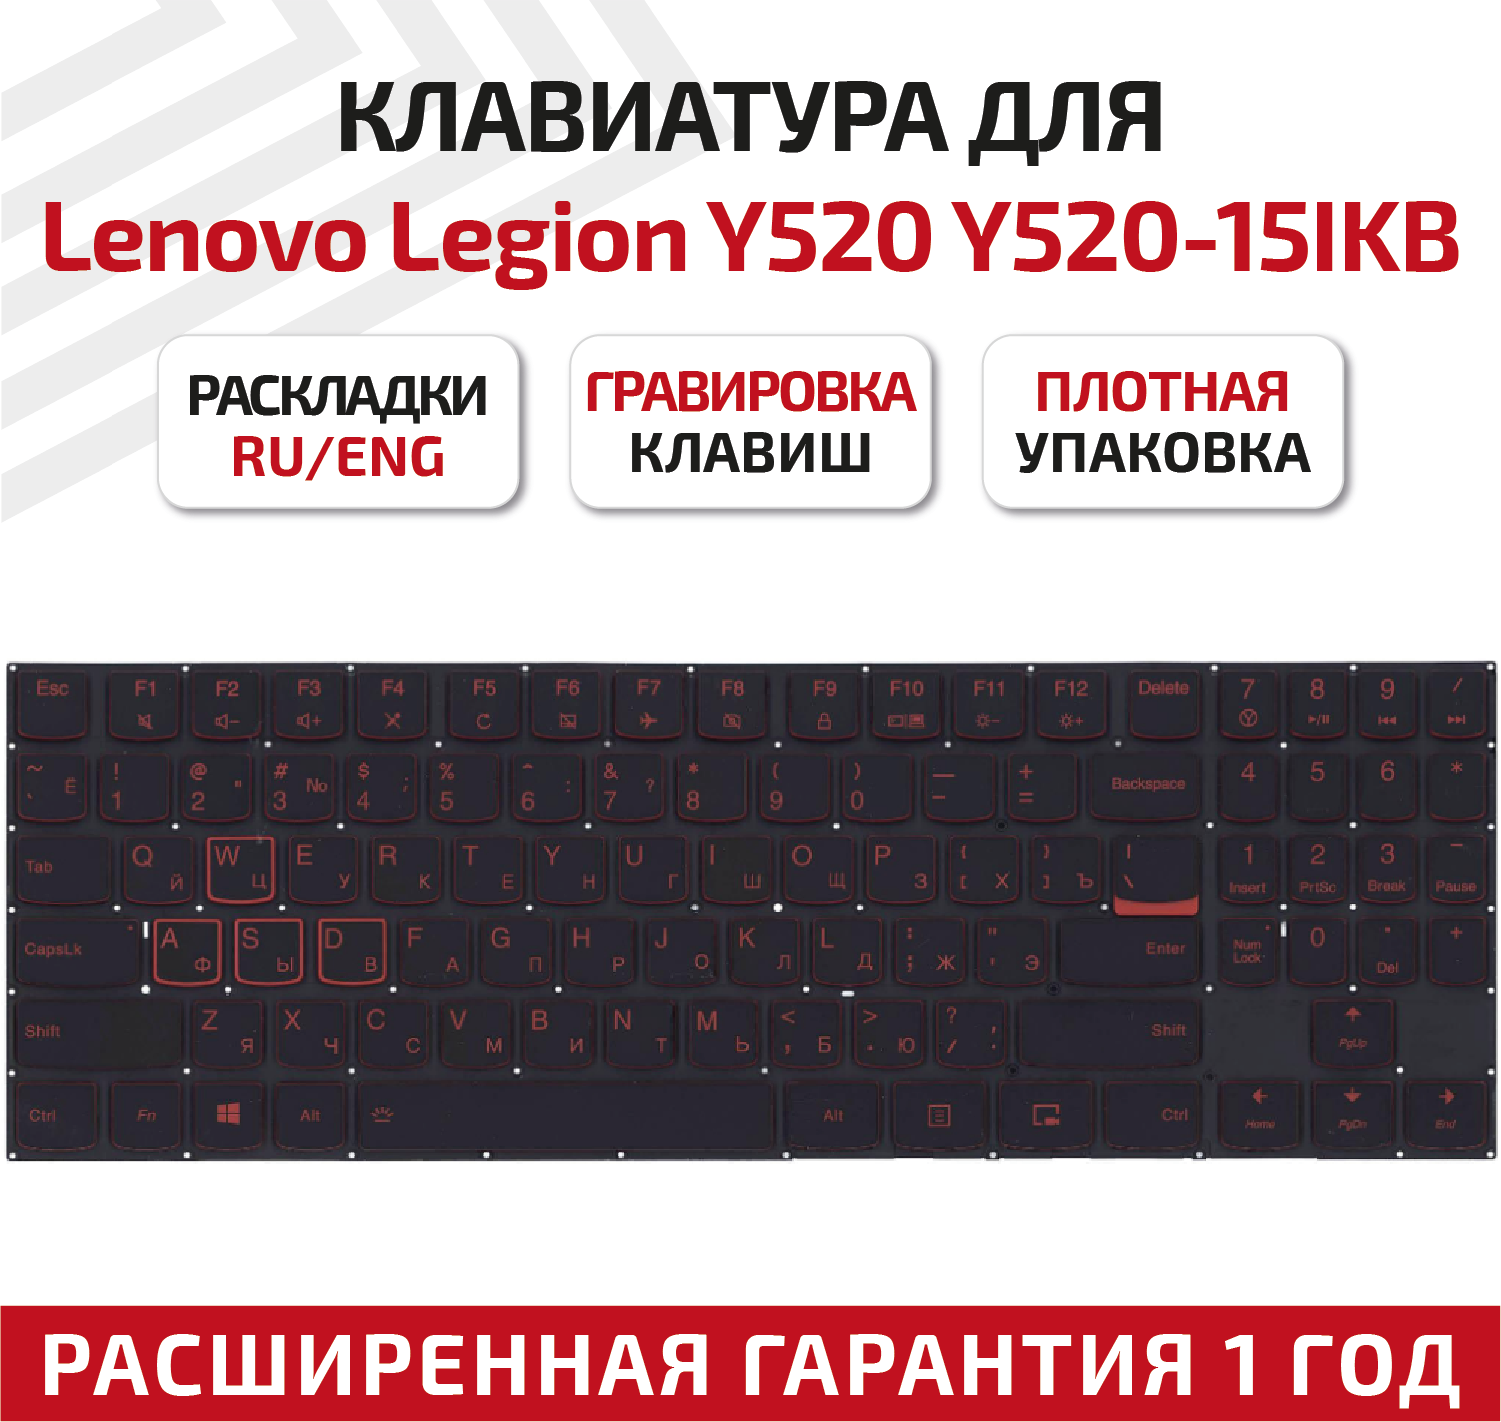 Клавиатура (keyboard) PC5YB-US для ноутбука Lenovo Legion Y520 Y520-15IKB Y720 Y720-15IKB R720 R720-15IKB Y520-15IKBM черная без рамки